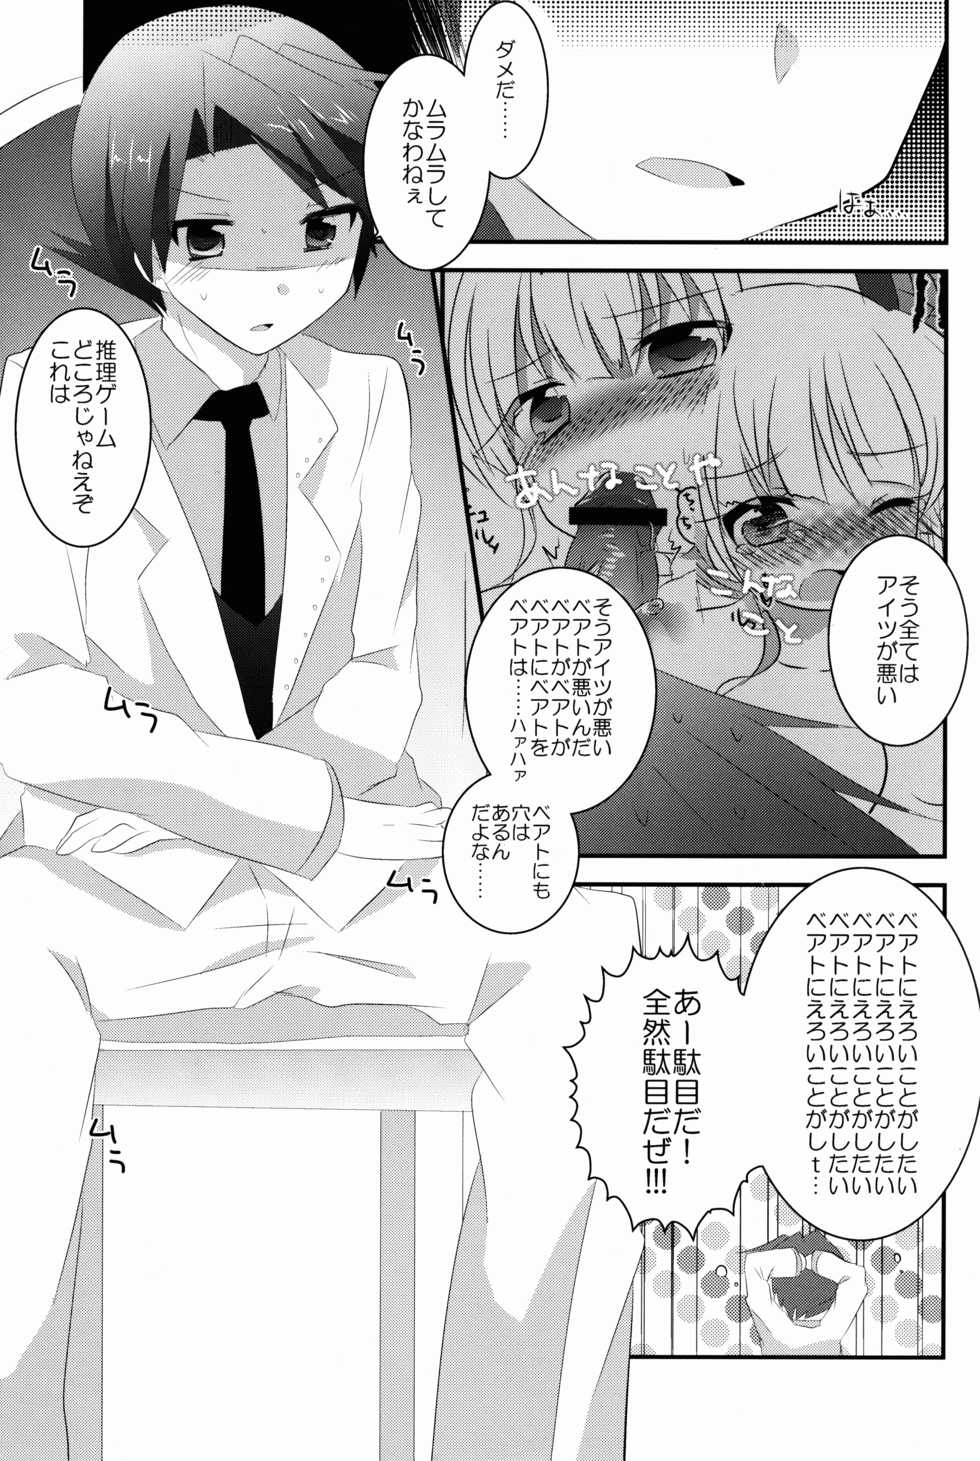 (07th Expansion Party! 02) [Slime Kikaku (Kuriyuzu Kuryuu)] see you again in your dream! (Umineko no Naku Koro ni) - Page 5